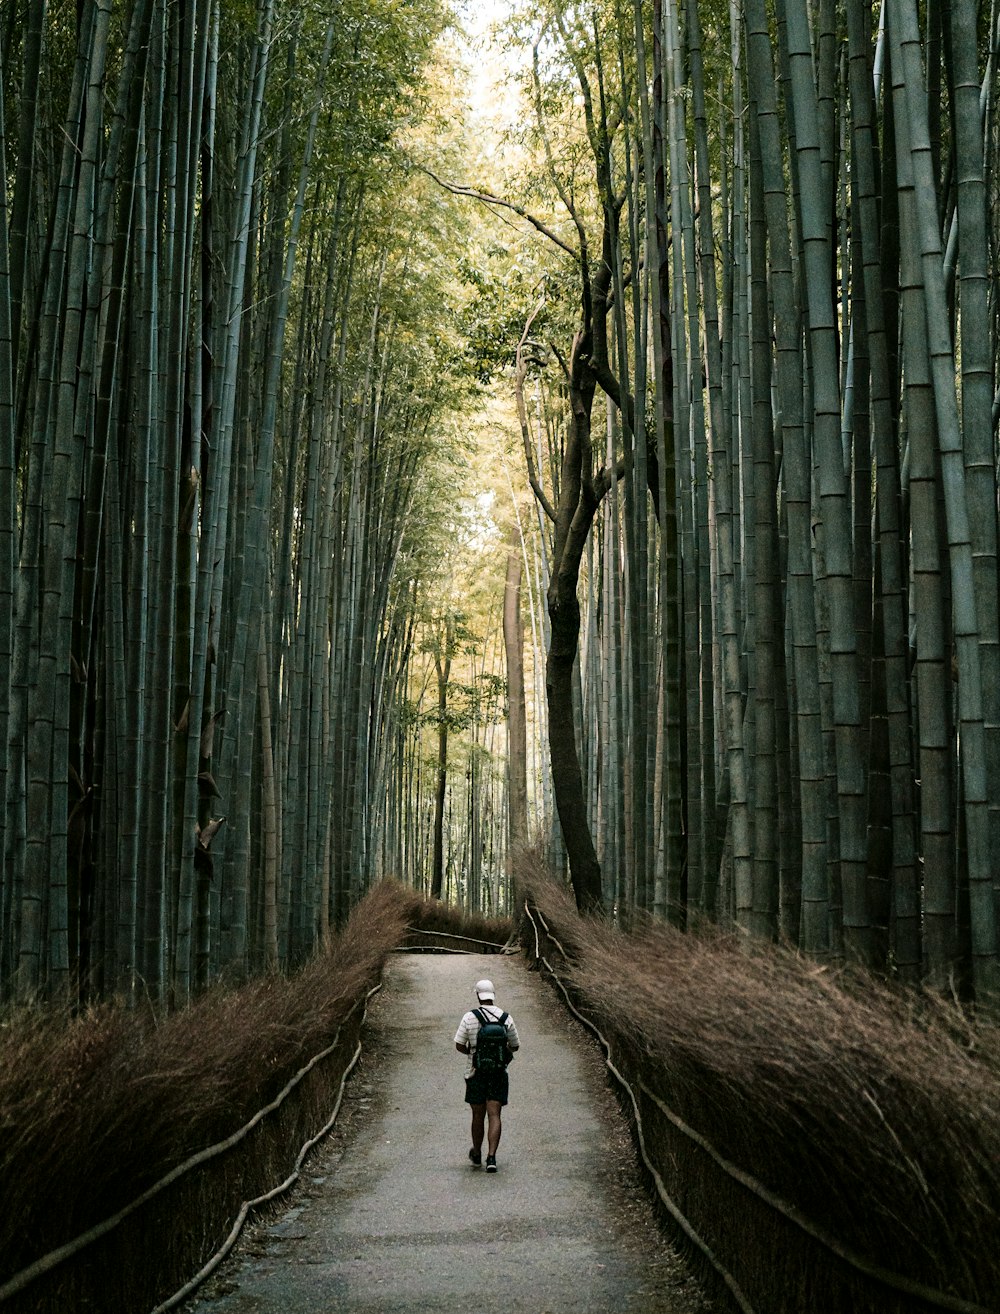 uma pessoa caminhando por um caminho em uma floresta de bambu